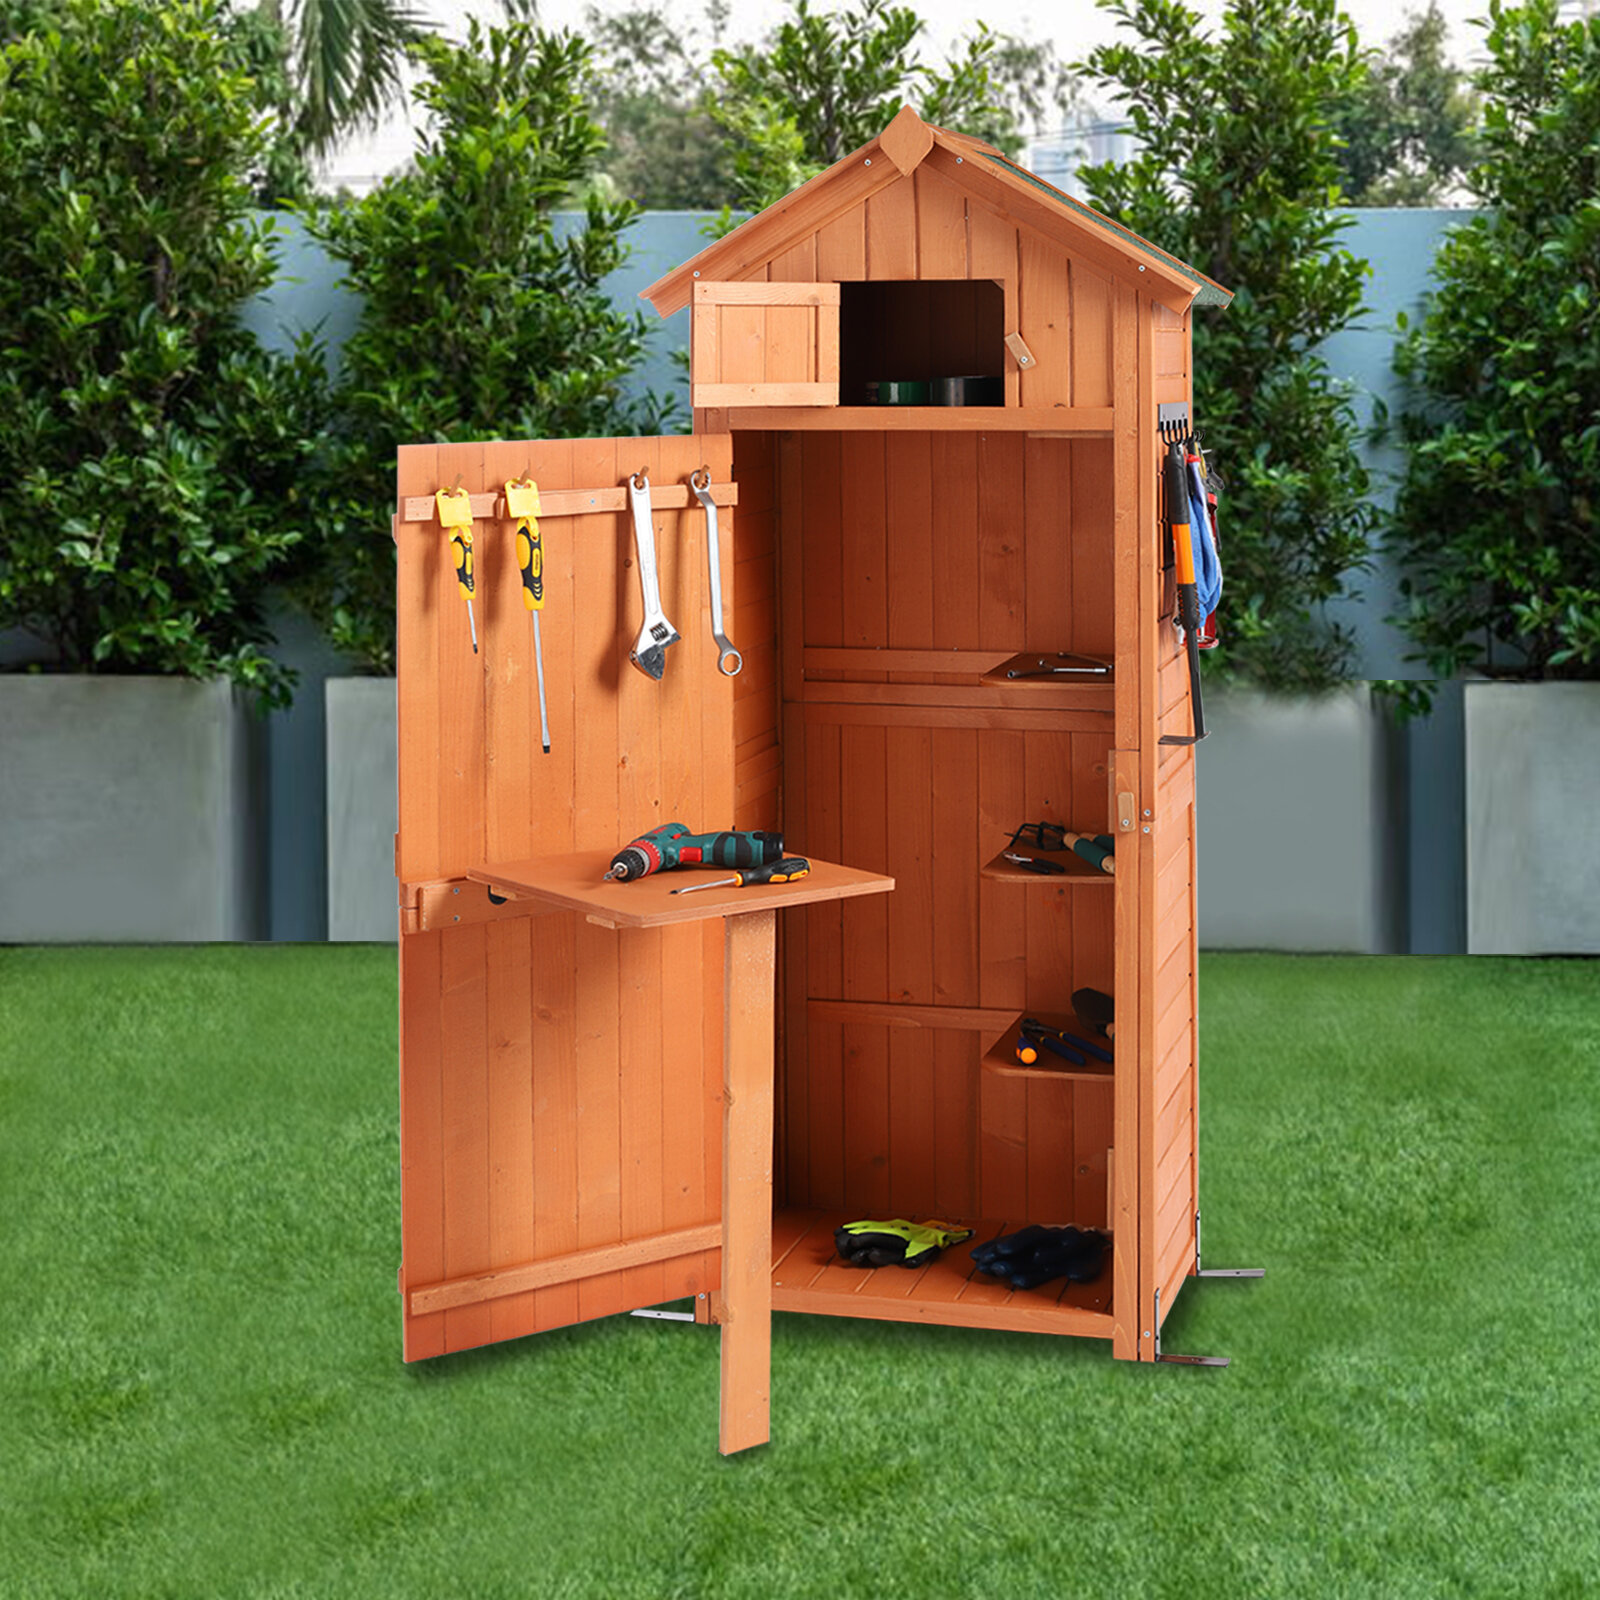 https://assets.wfcdn.com/im/79497237/compr-r85/1405/140566861/garden-storage-shed-garden-tool-storage-cabinet-lockable-arrow-wooden-storage-sheds-organizer-for-home-yard-outdoor.jpg